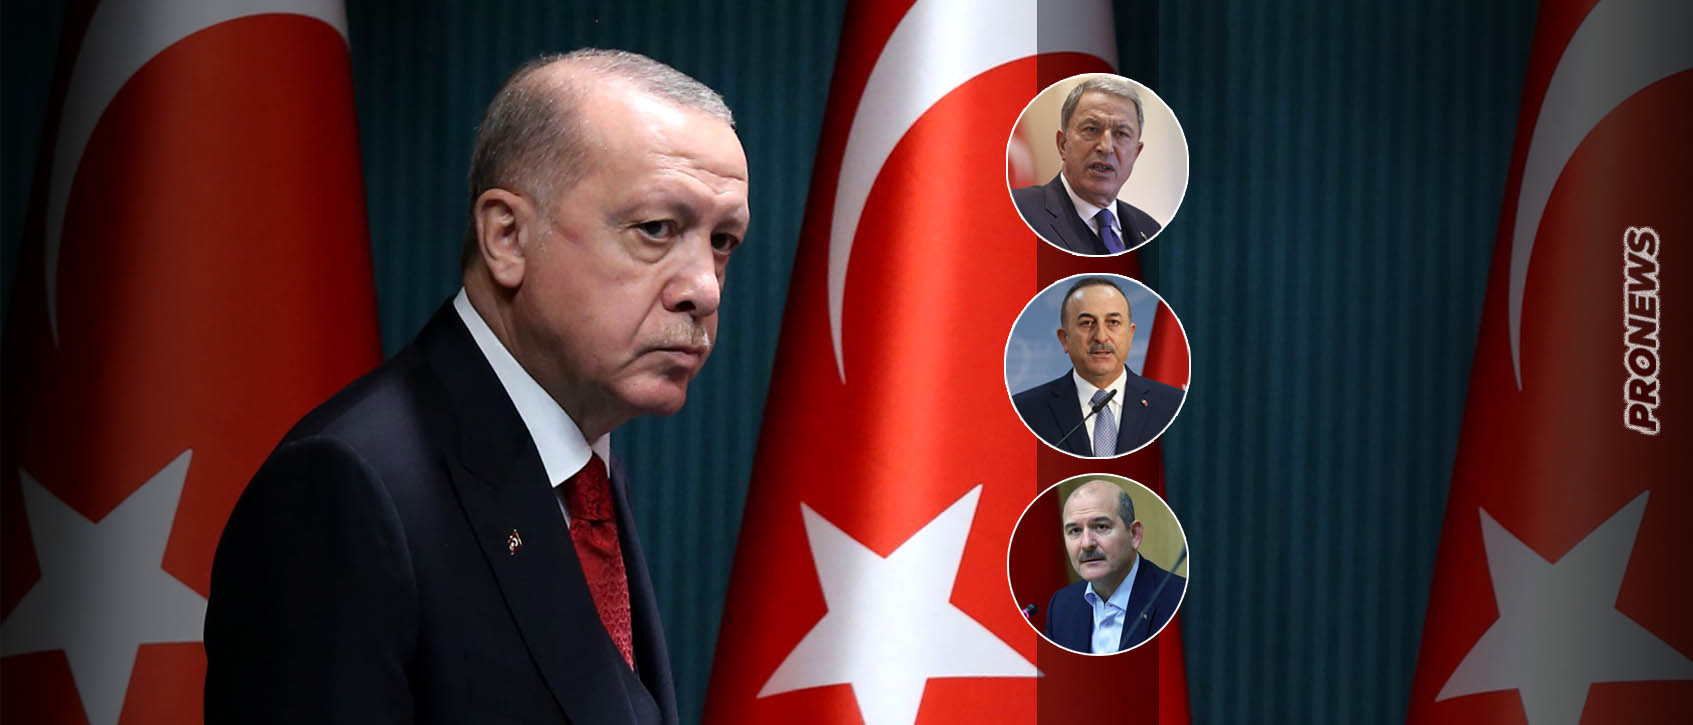 Ανατροπές στην σύνθεση της νέας τουρκικής κυβέρνησης: O Eρντογάν αφήνει εκτός τους Χ.Ακάρ, Μ.Τσαβούσογλου και Σ.Σοϊλού!